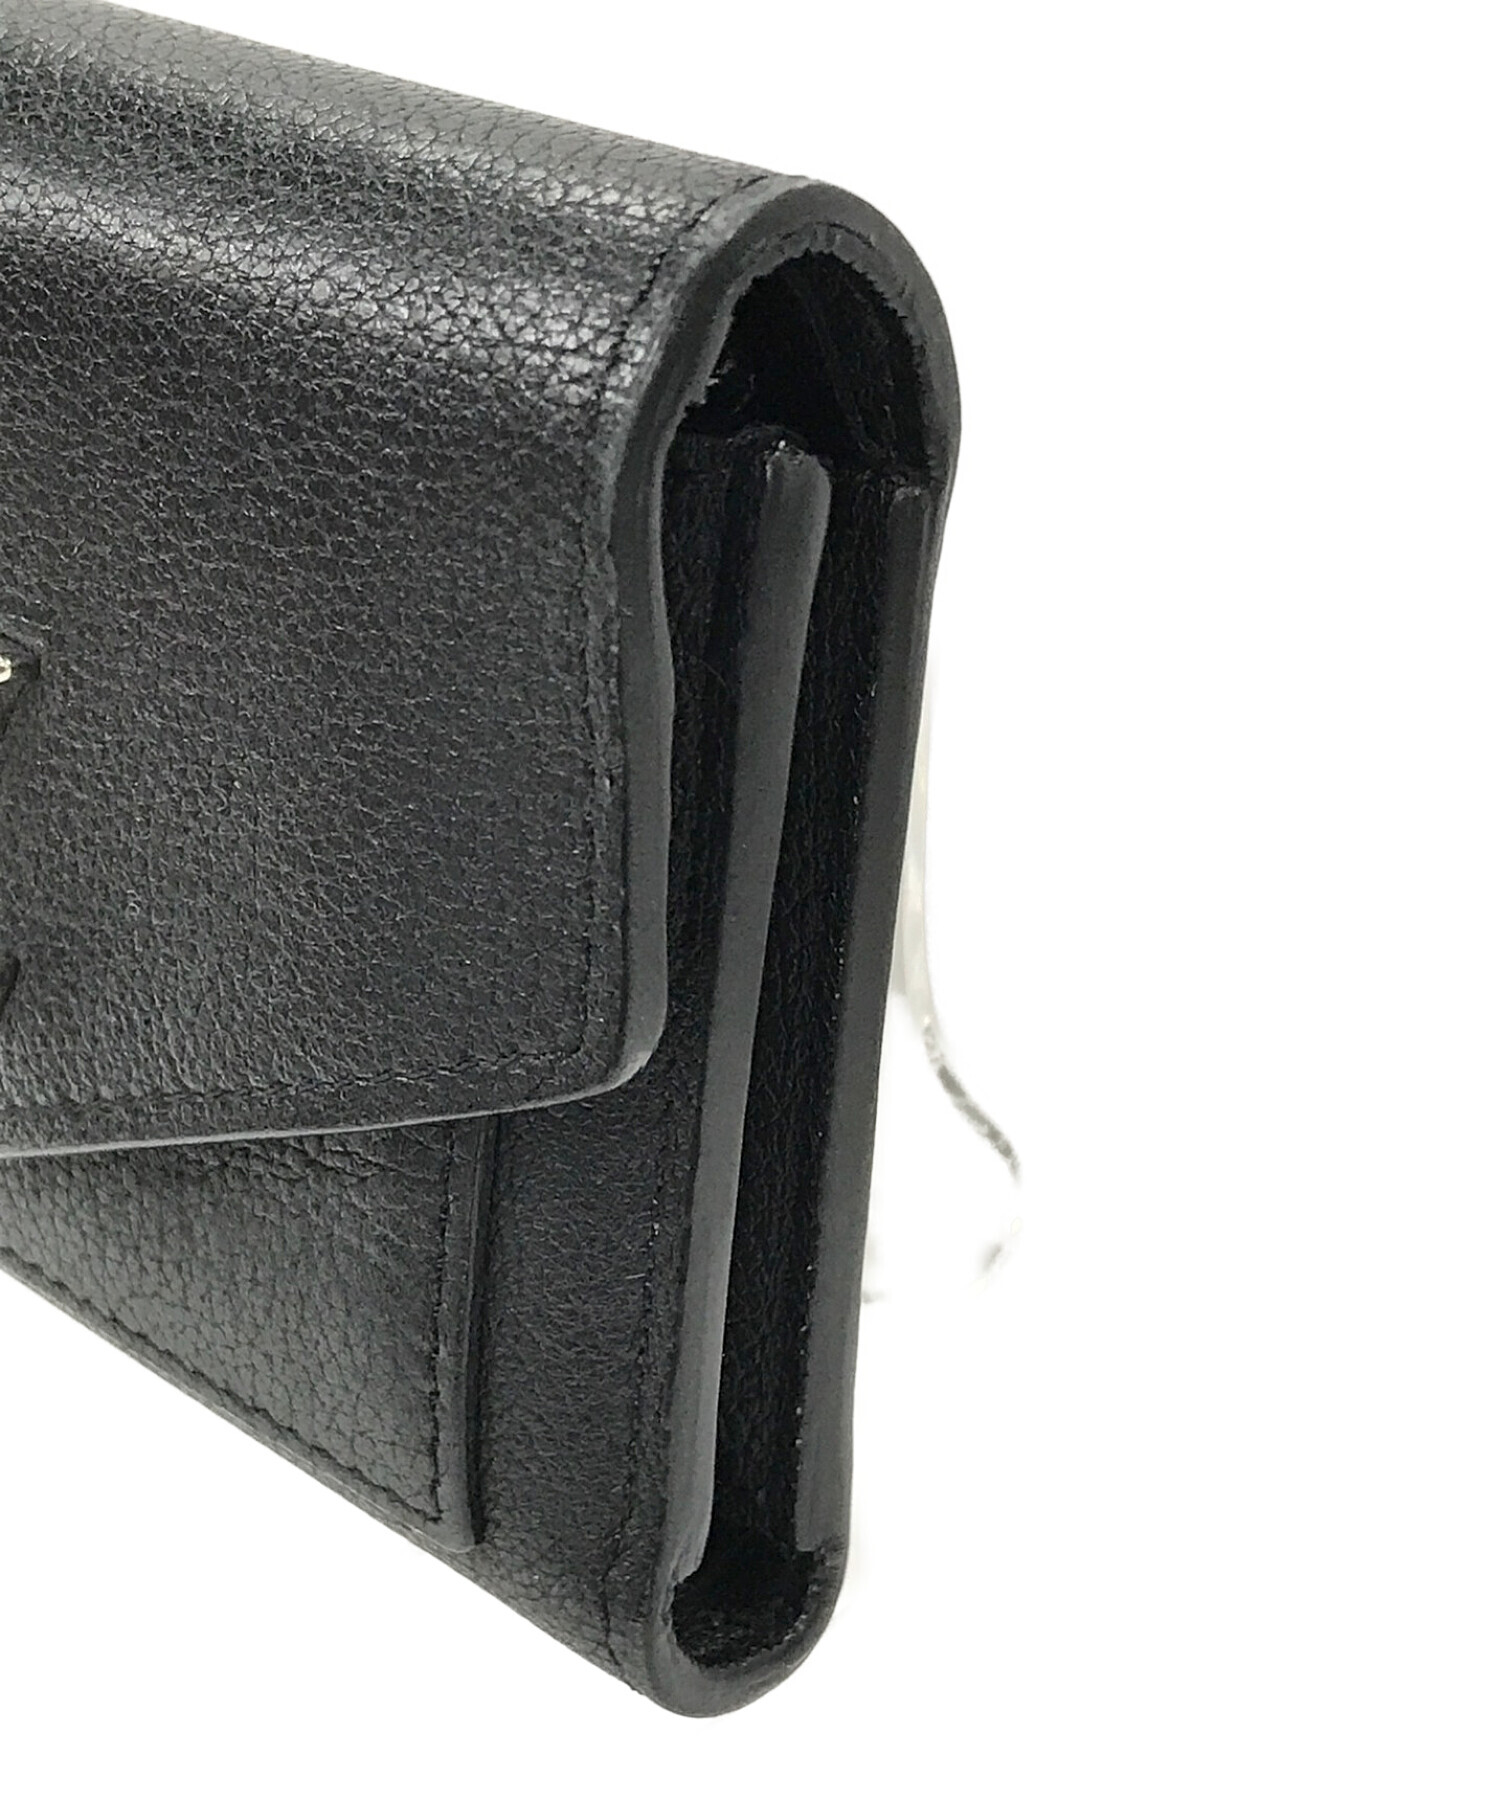 LOUIS VUITTON (ルイ ヴィトン) ポルトフォイユ・マイロックミーコンパクト 3つ折り財布 ブラック サイズ:実寸サイズにてご確認ください。